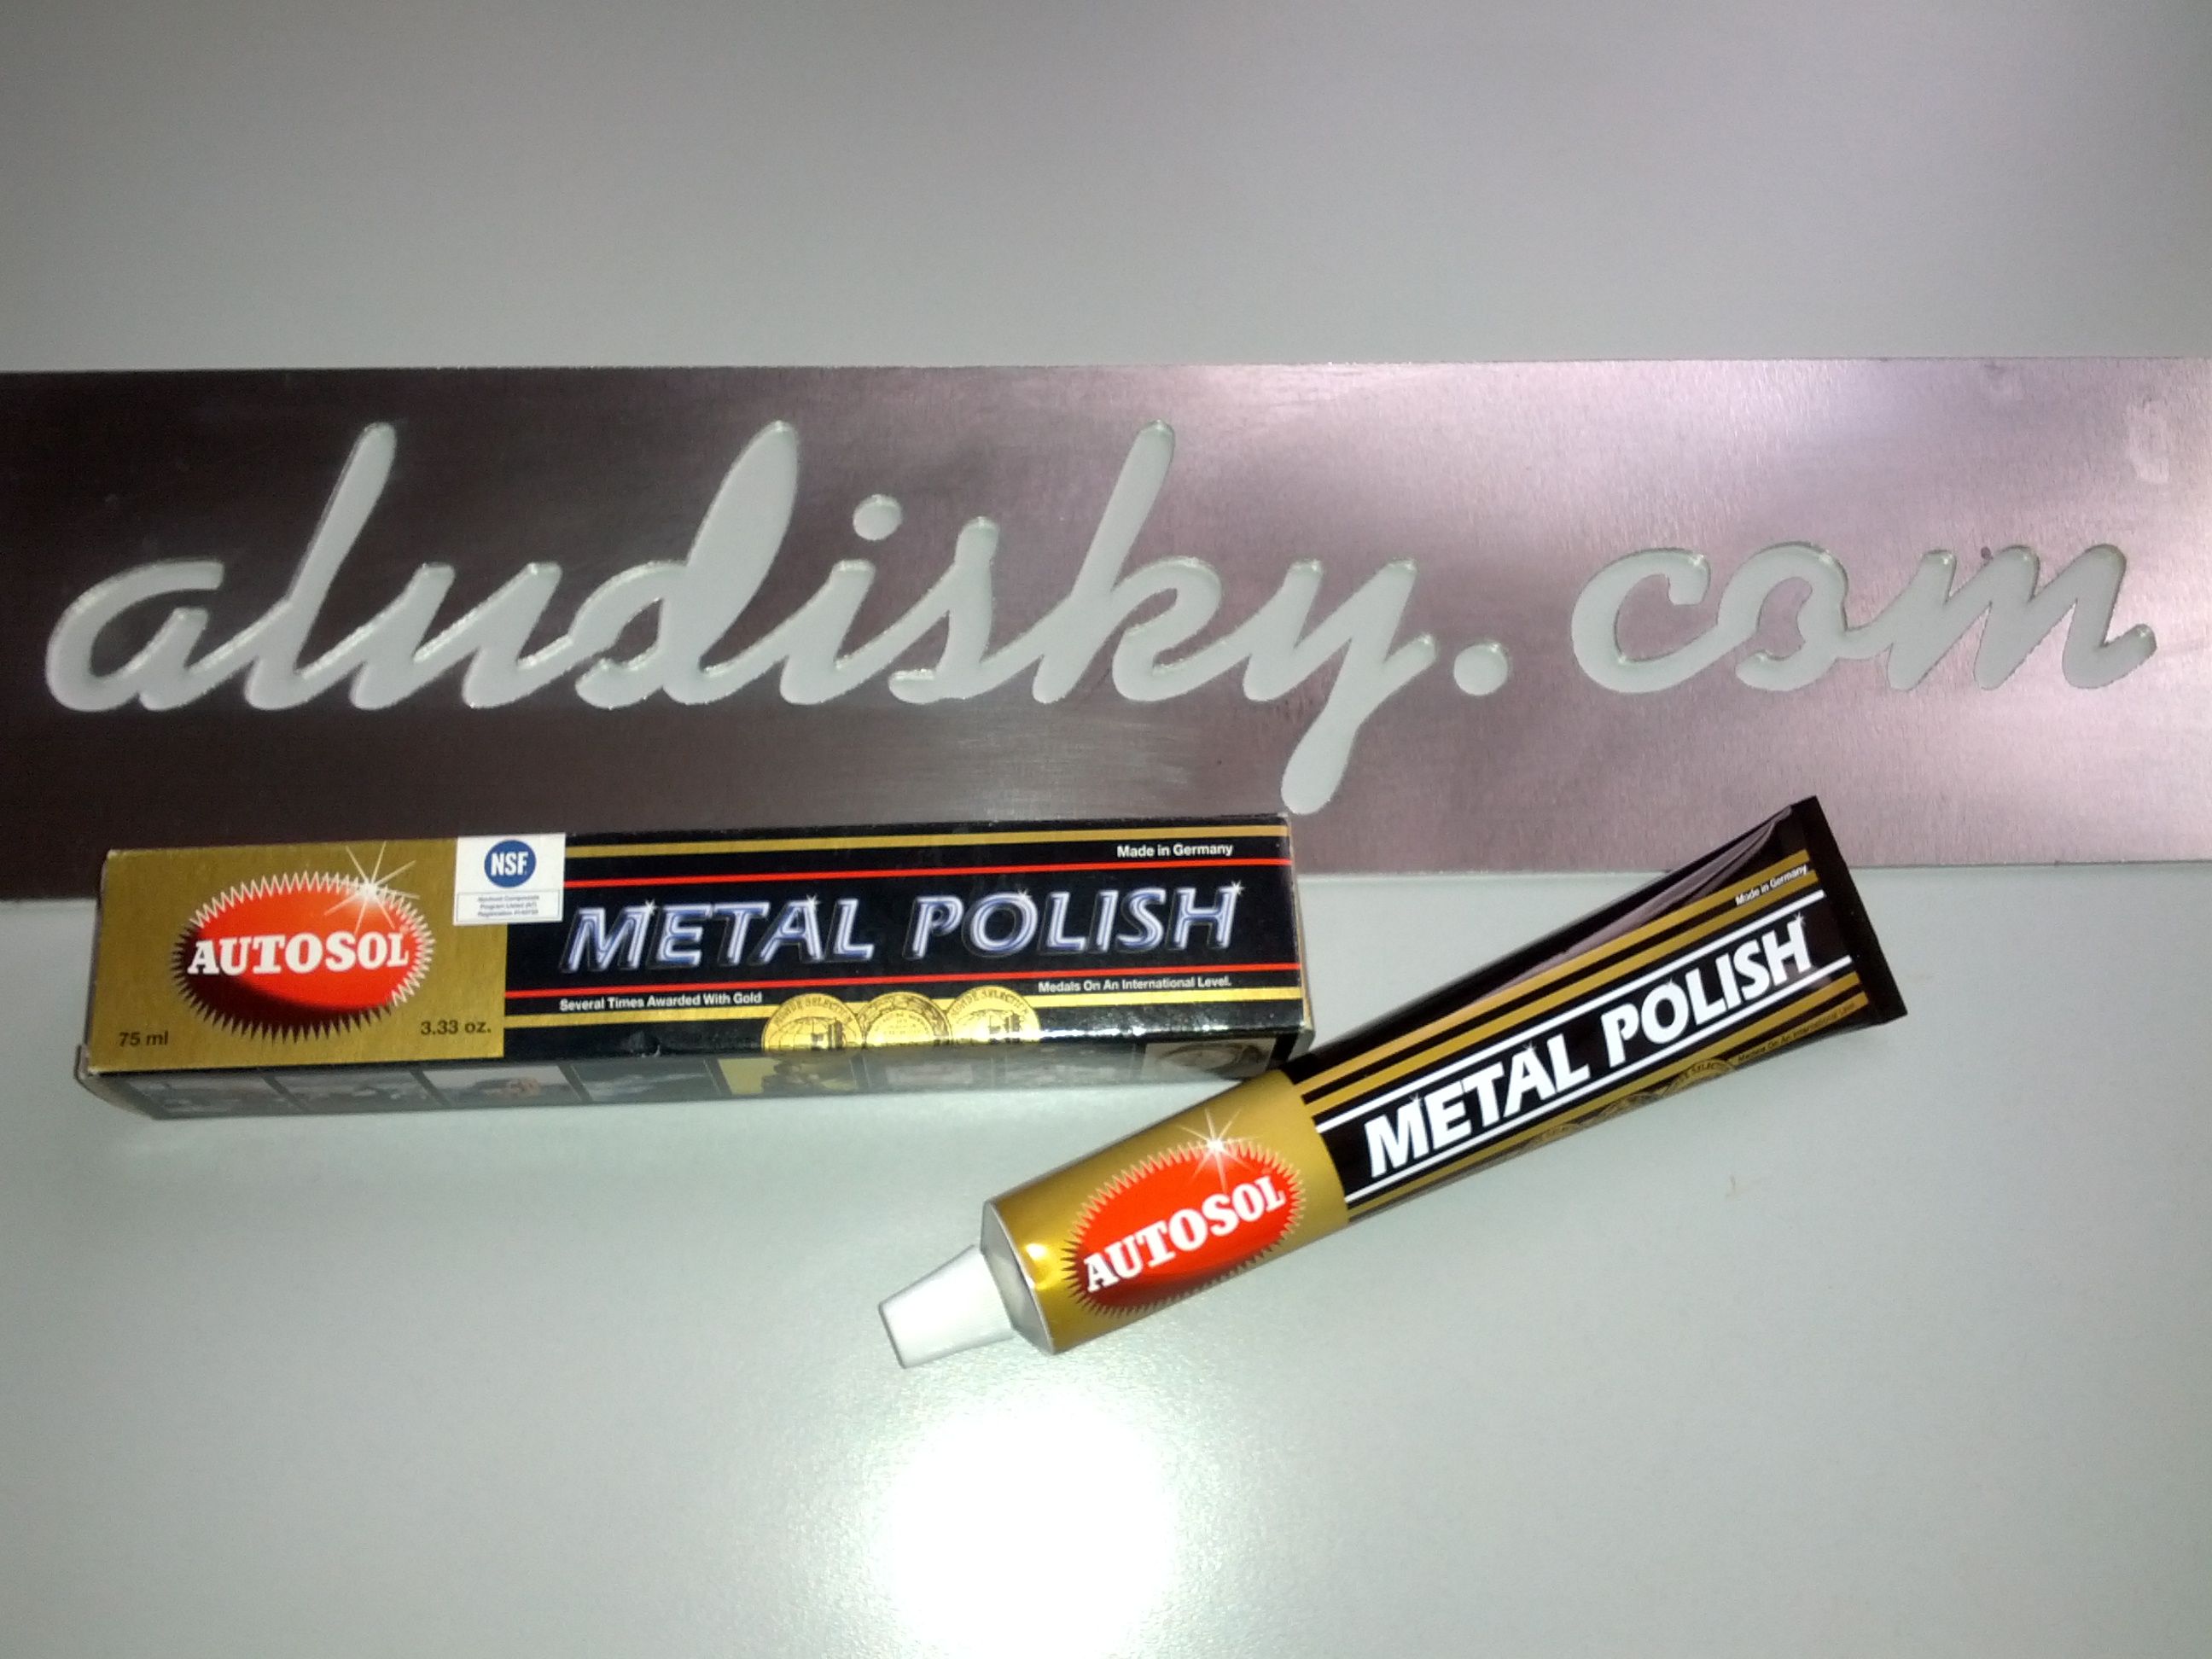 Metal Polish 75ml